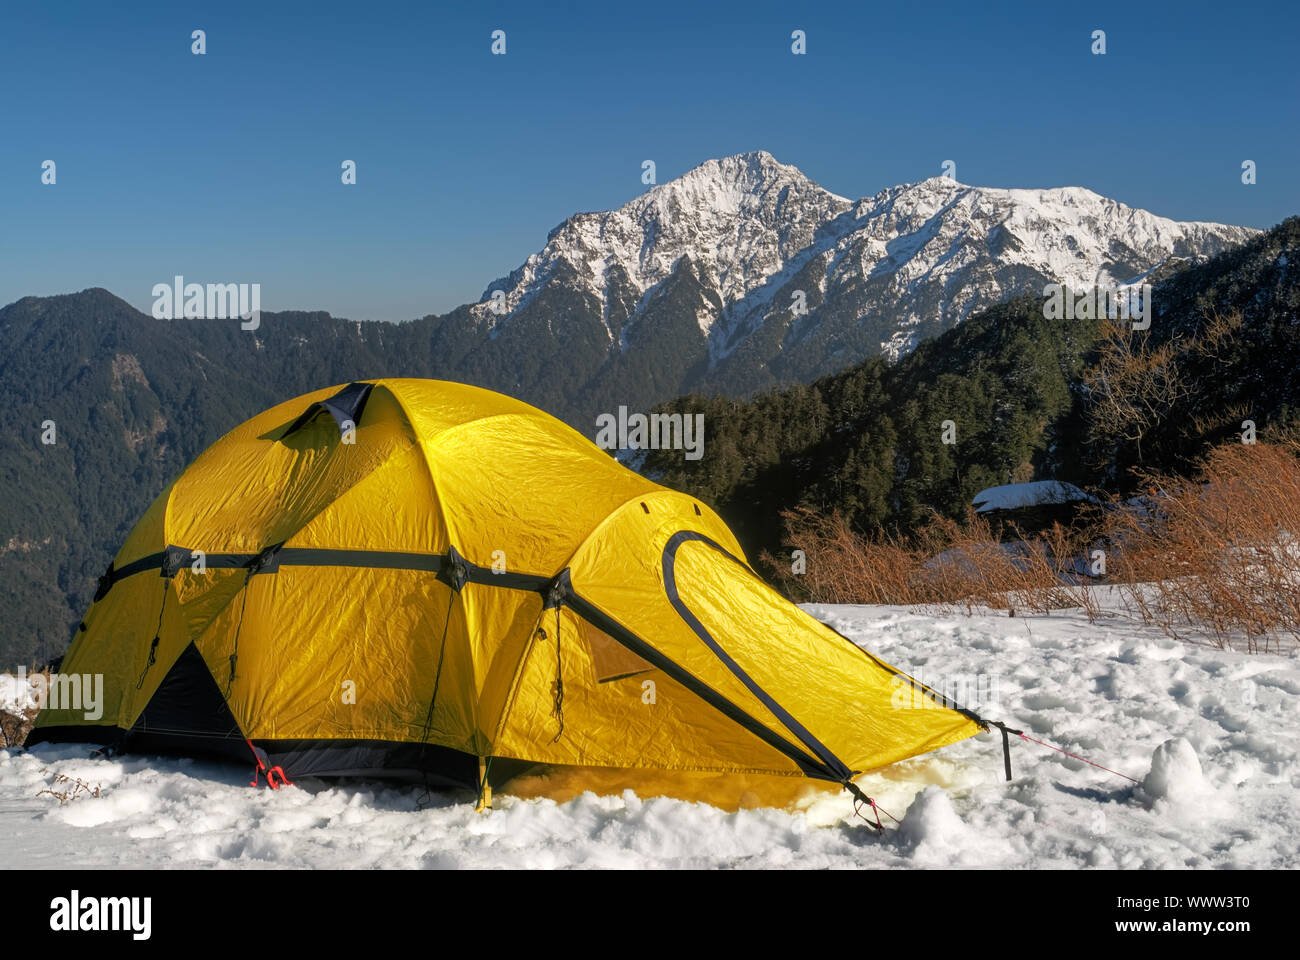 Tente jaune sur la colline de neige en hiver Photo Stock - Alamy